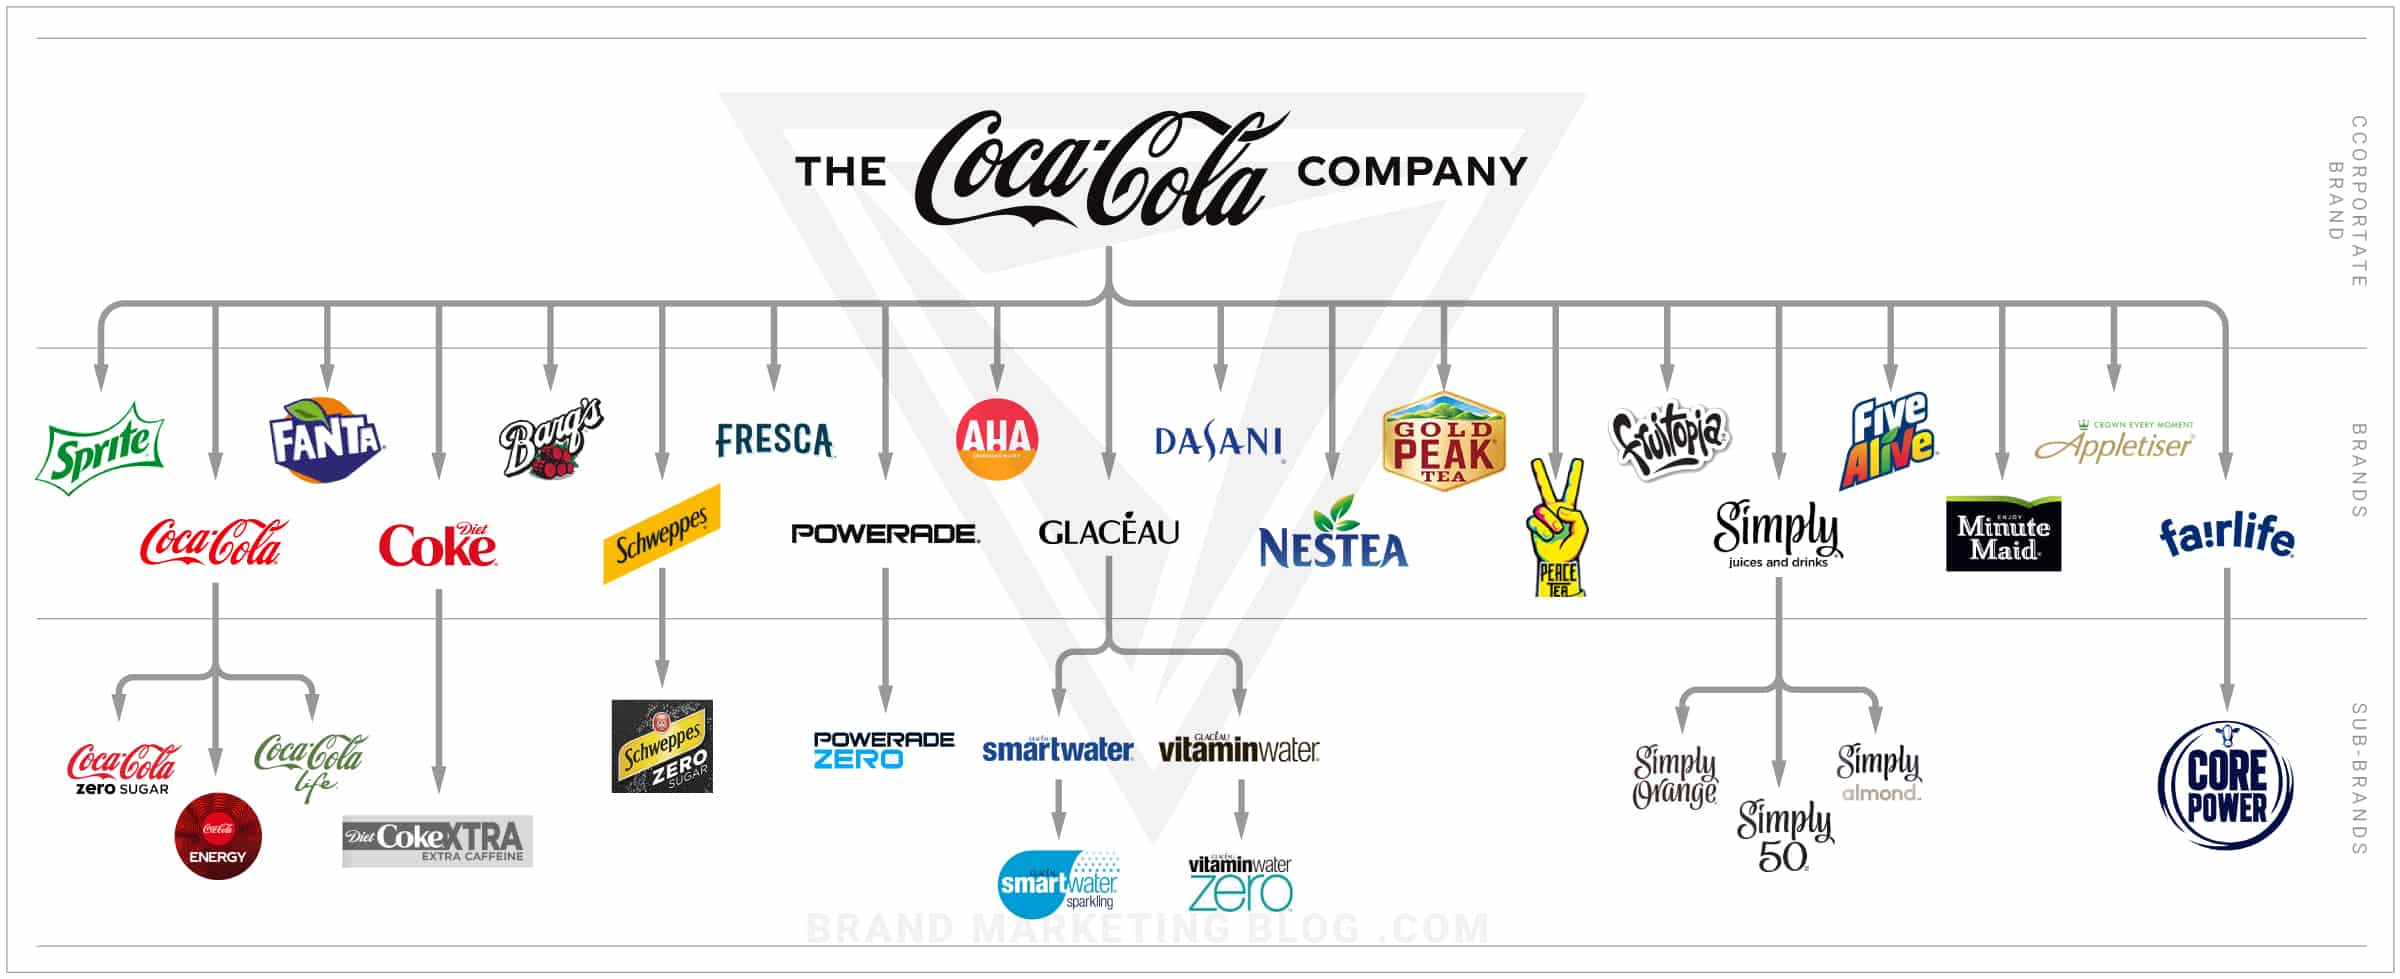 Coca-Cola brand architecture